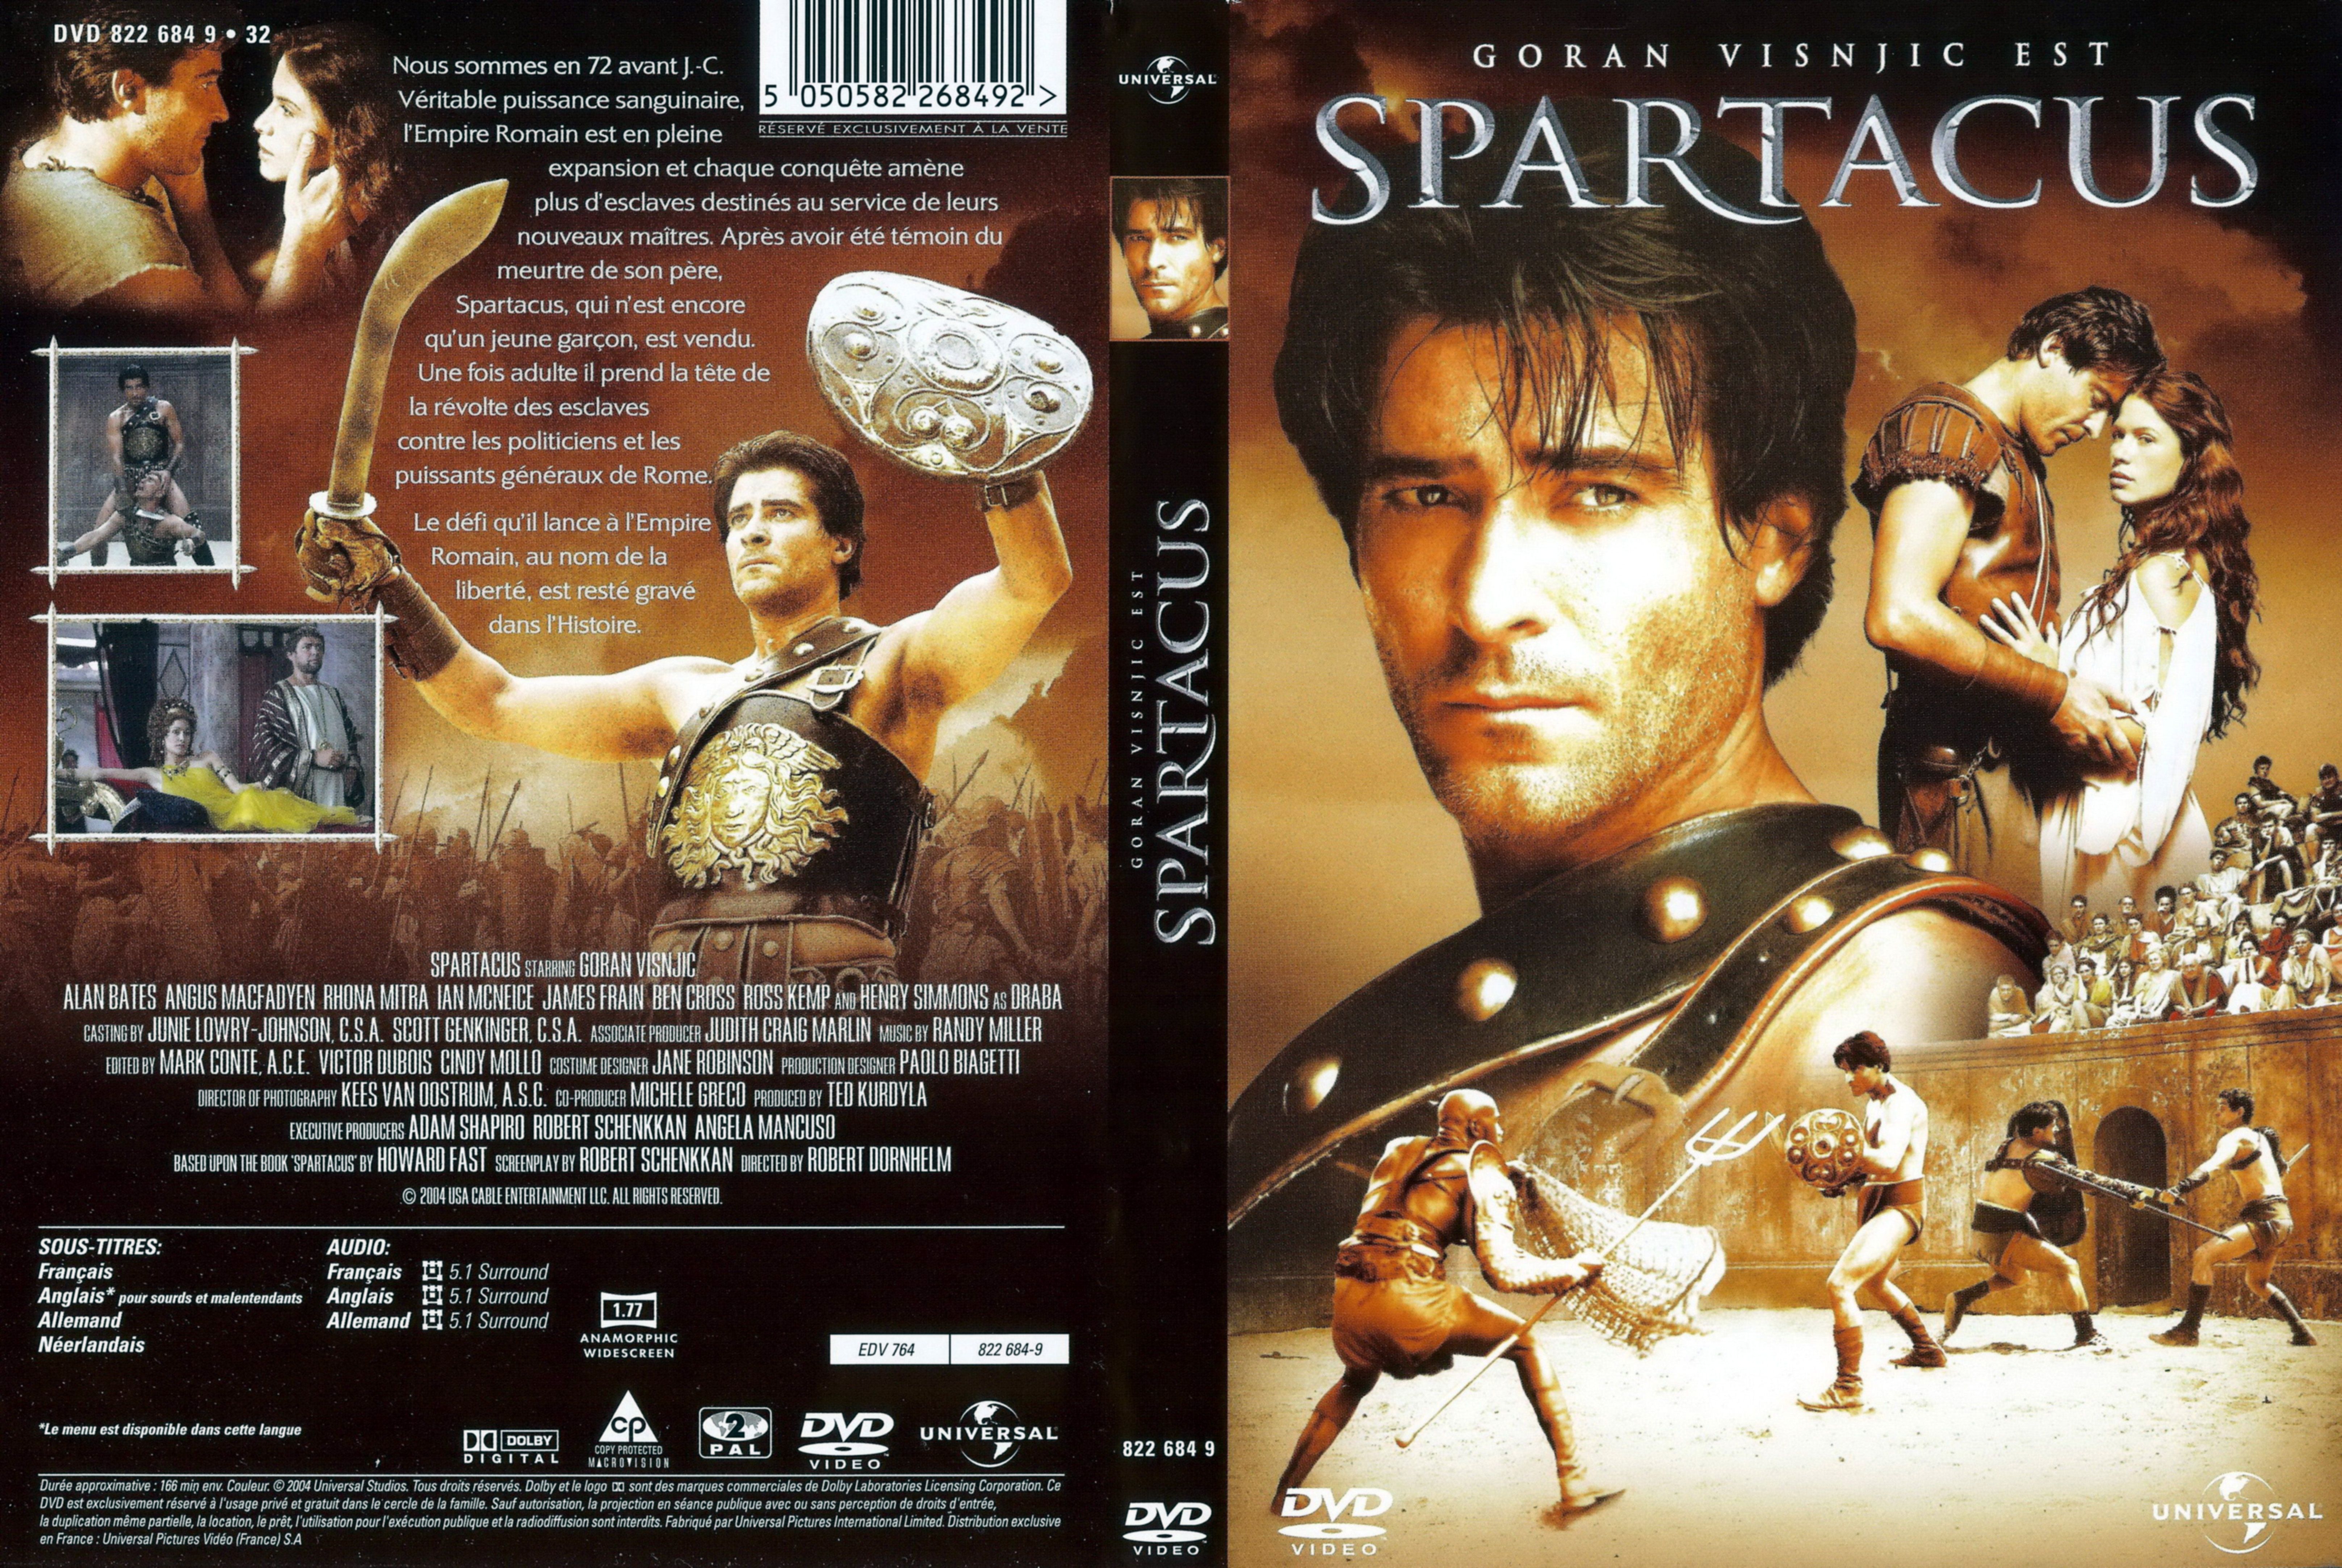 Jaquette DVD Spartacus (2004) v2